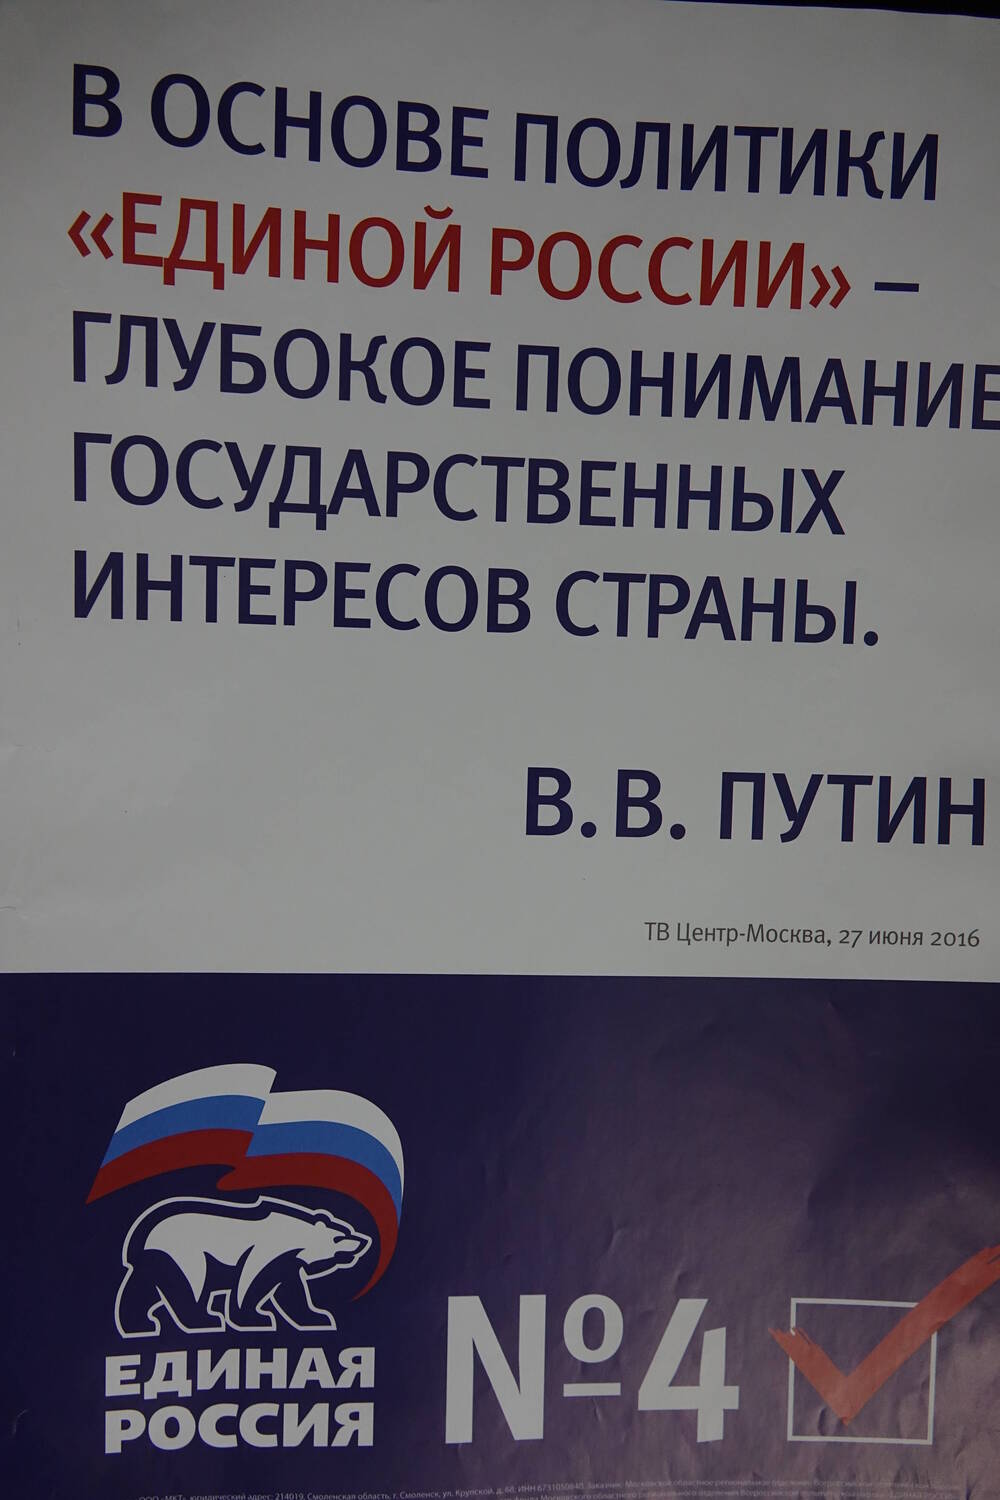 Плакат с надписью: «В основе политики «Единой   России» - глубокое понимание государственных ин-  тересов страны. В.В.Путин»